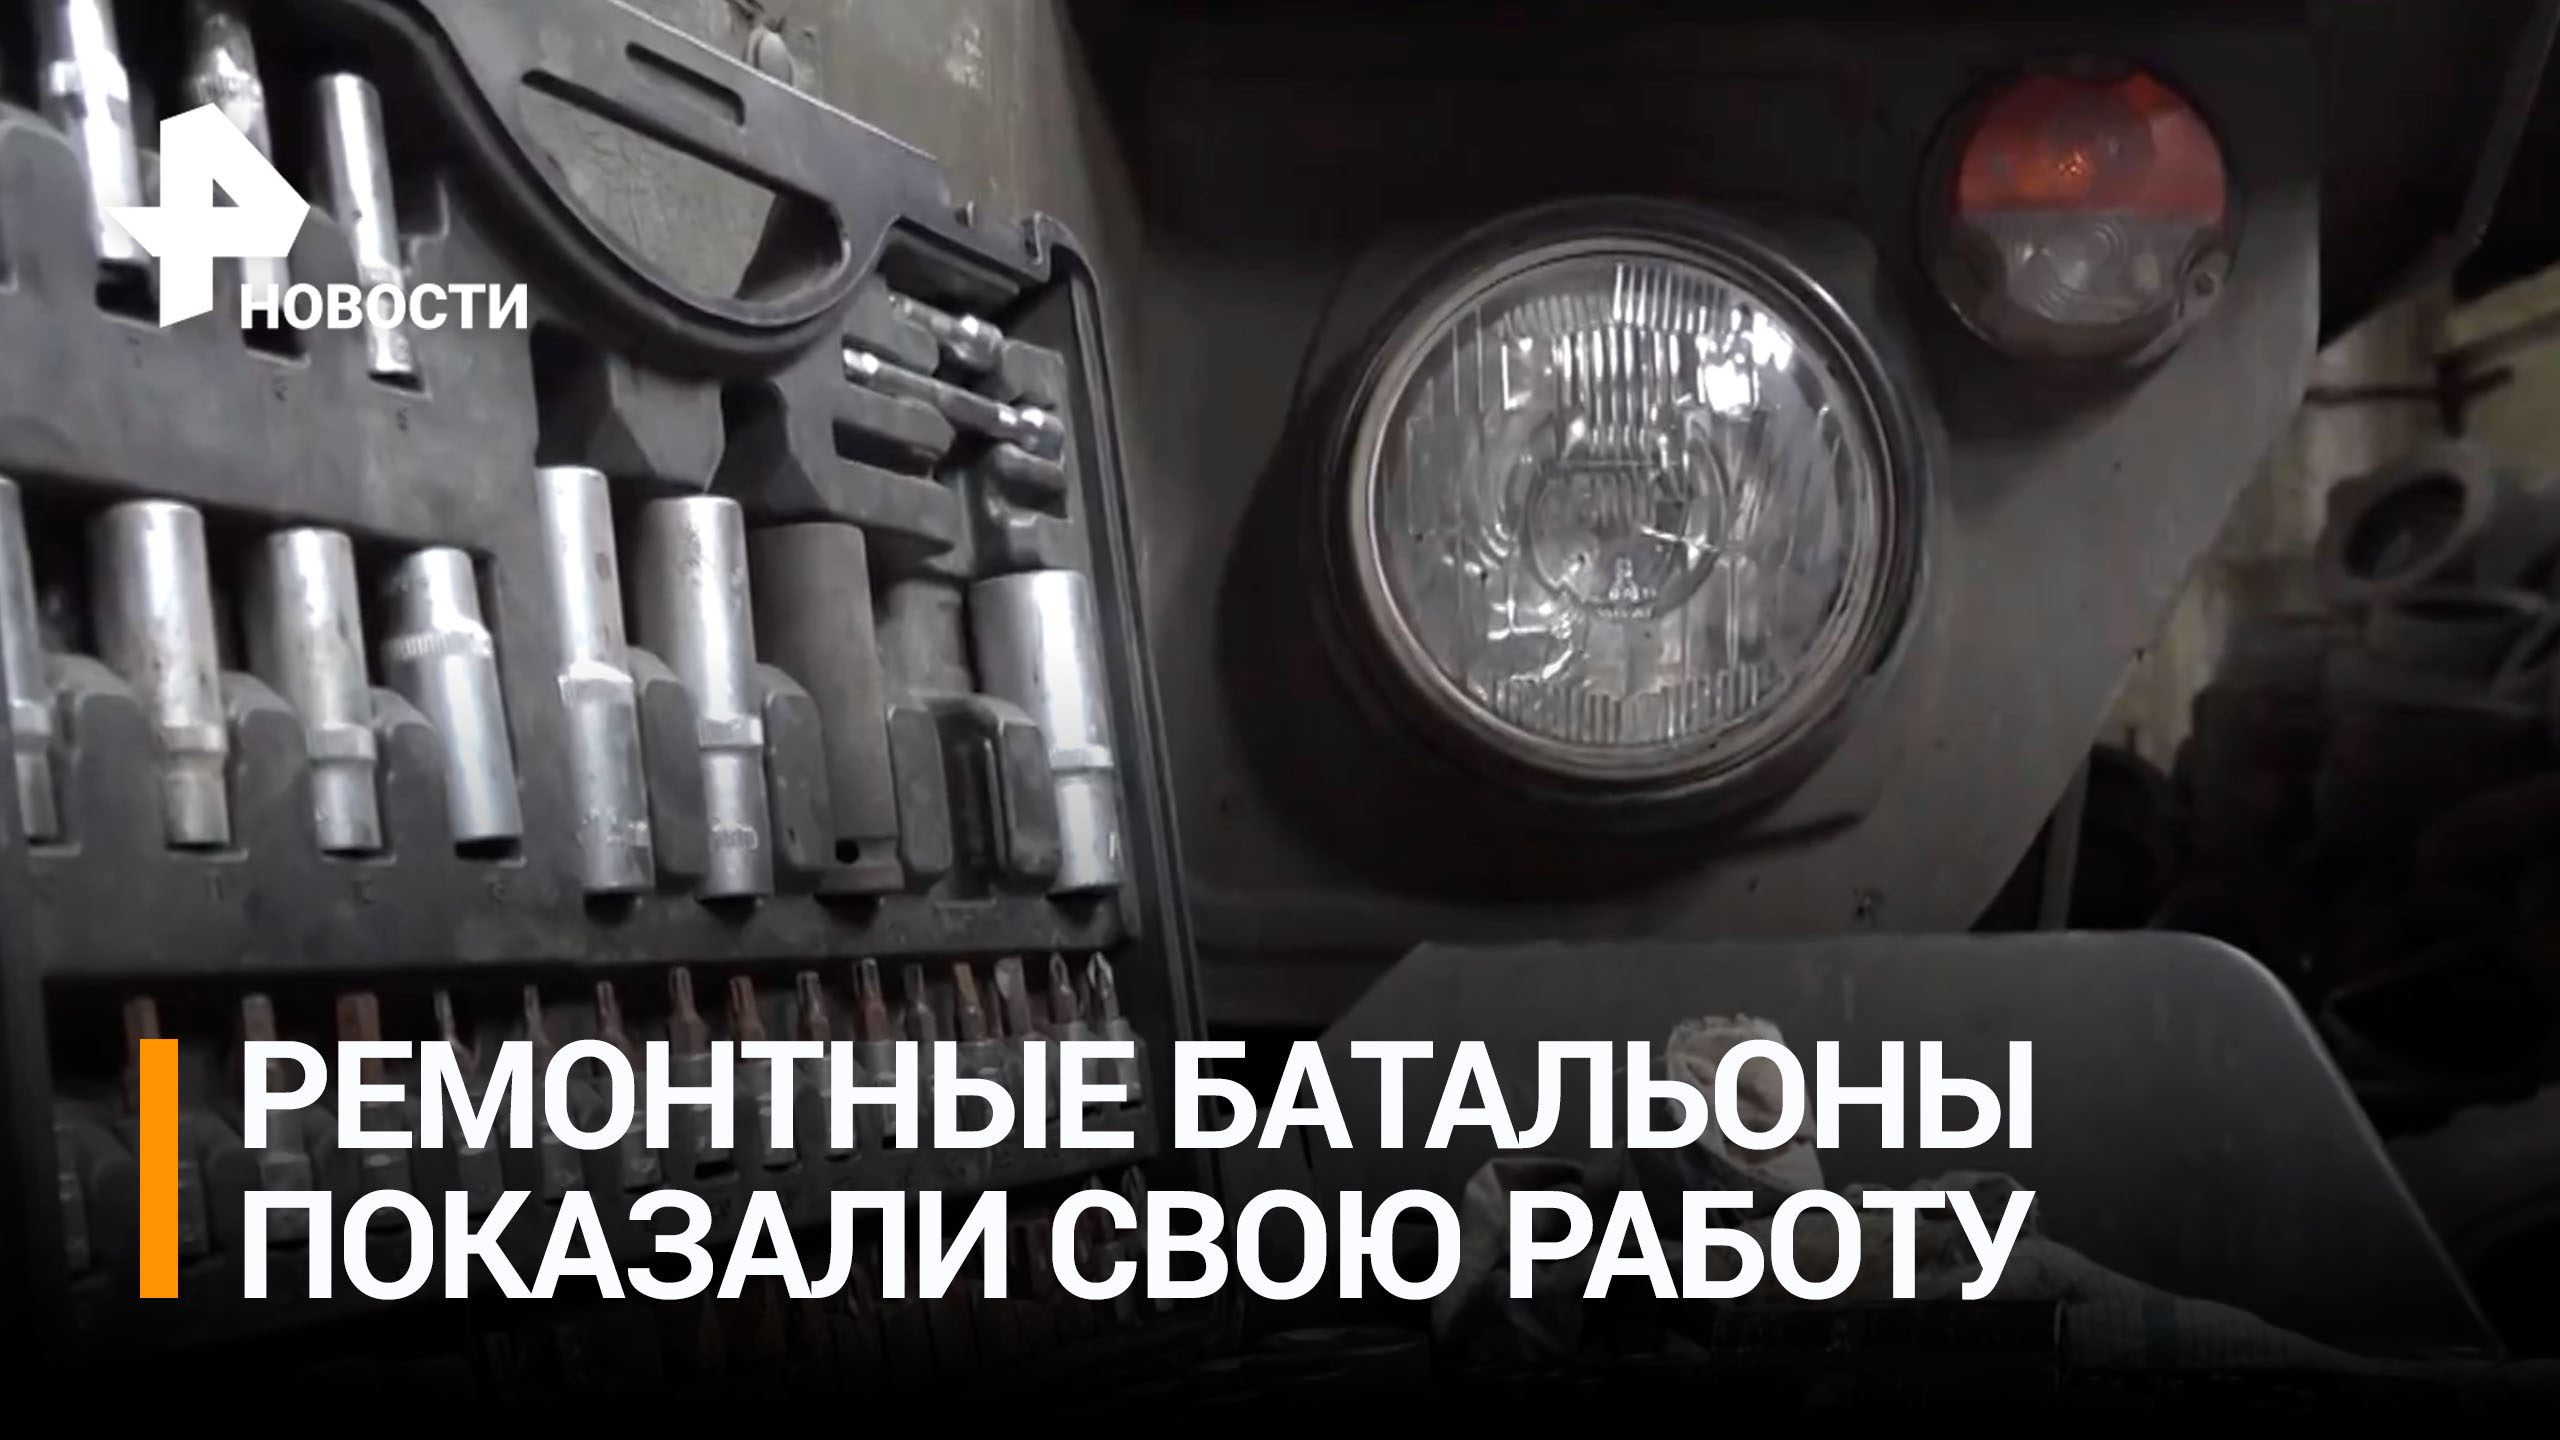 Ремонтные батальоны восстанавливают боевую технику / РЕН Новости